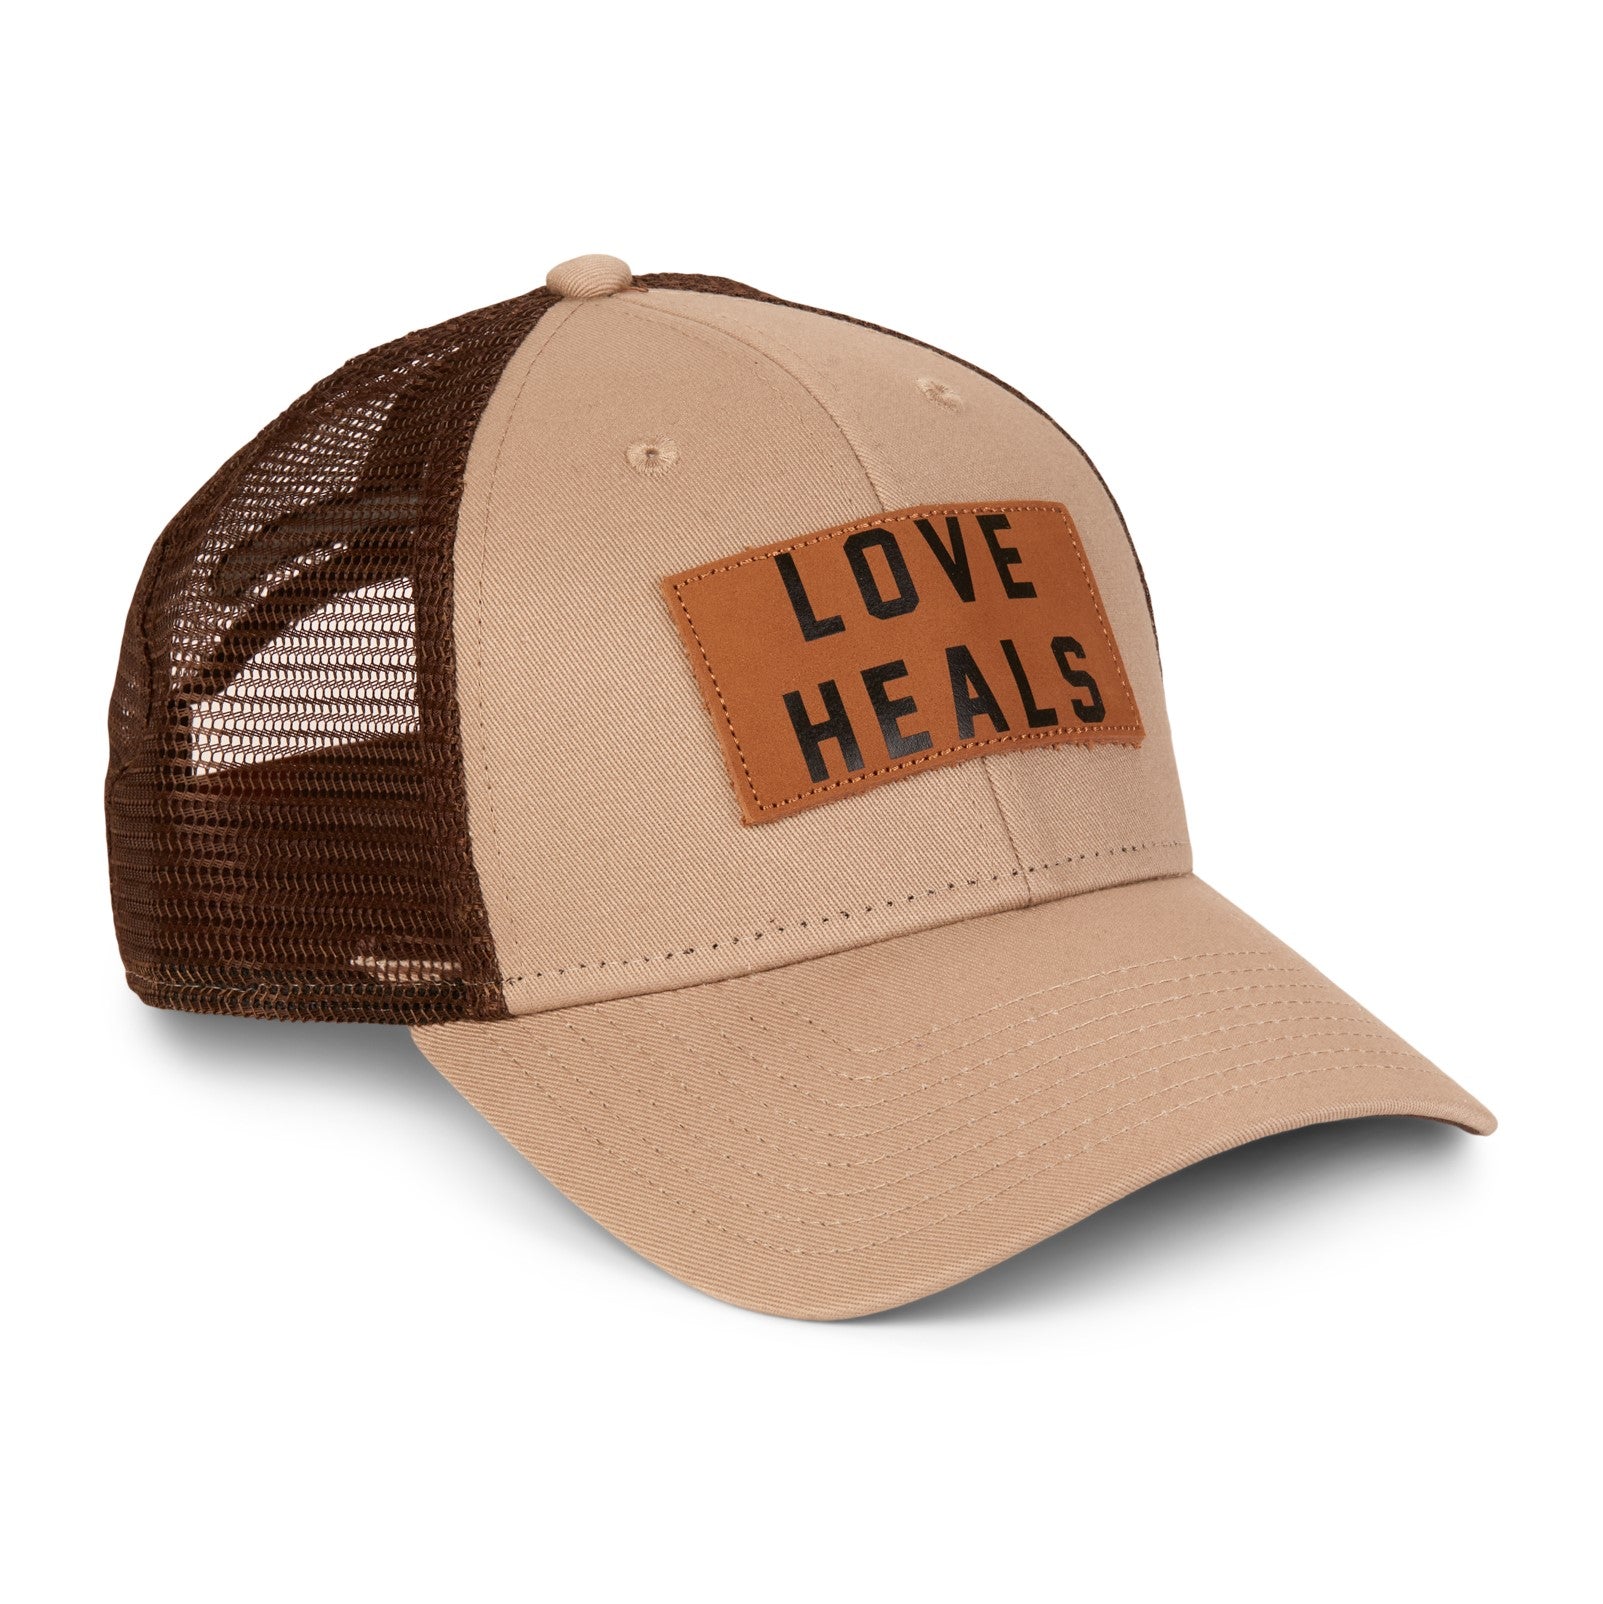 Love Heals Tan Hat - Thistle Farms